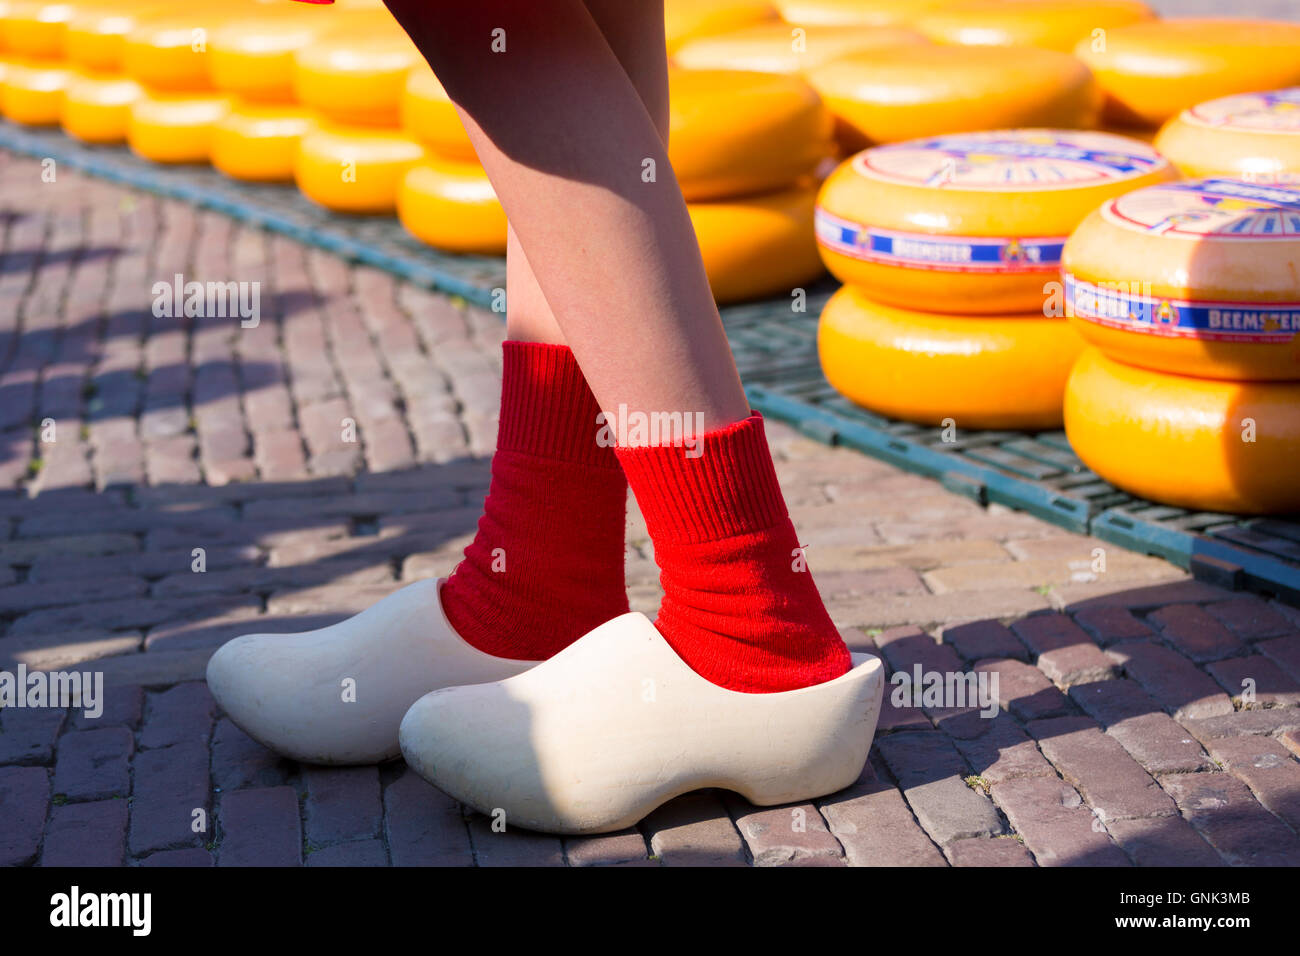 Sabots néerlandais chaussures et chaussettes traditionnels portés par femme  Kaasmeisje marché du fromage, Alkmaar, Pays-Bas Photo Stock - Alamy